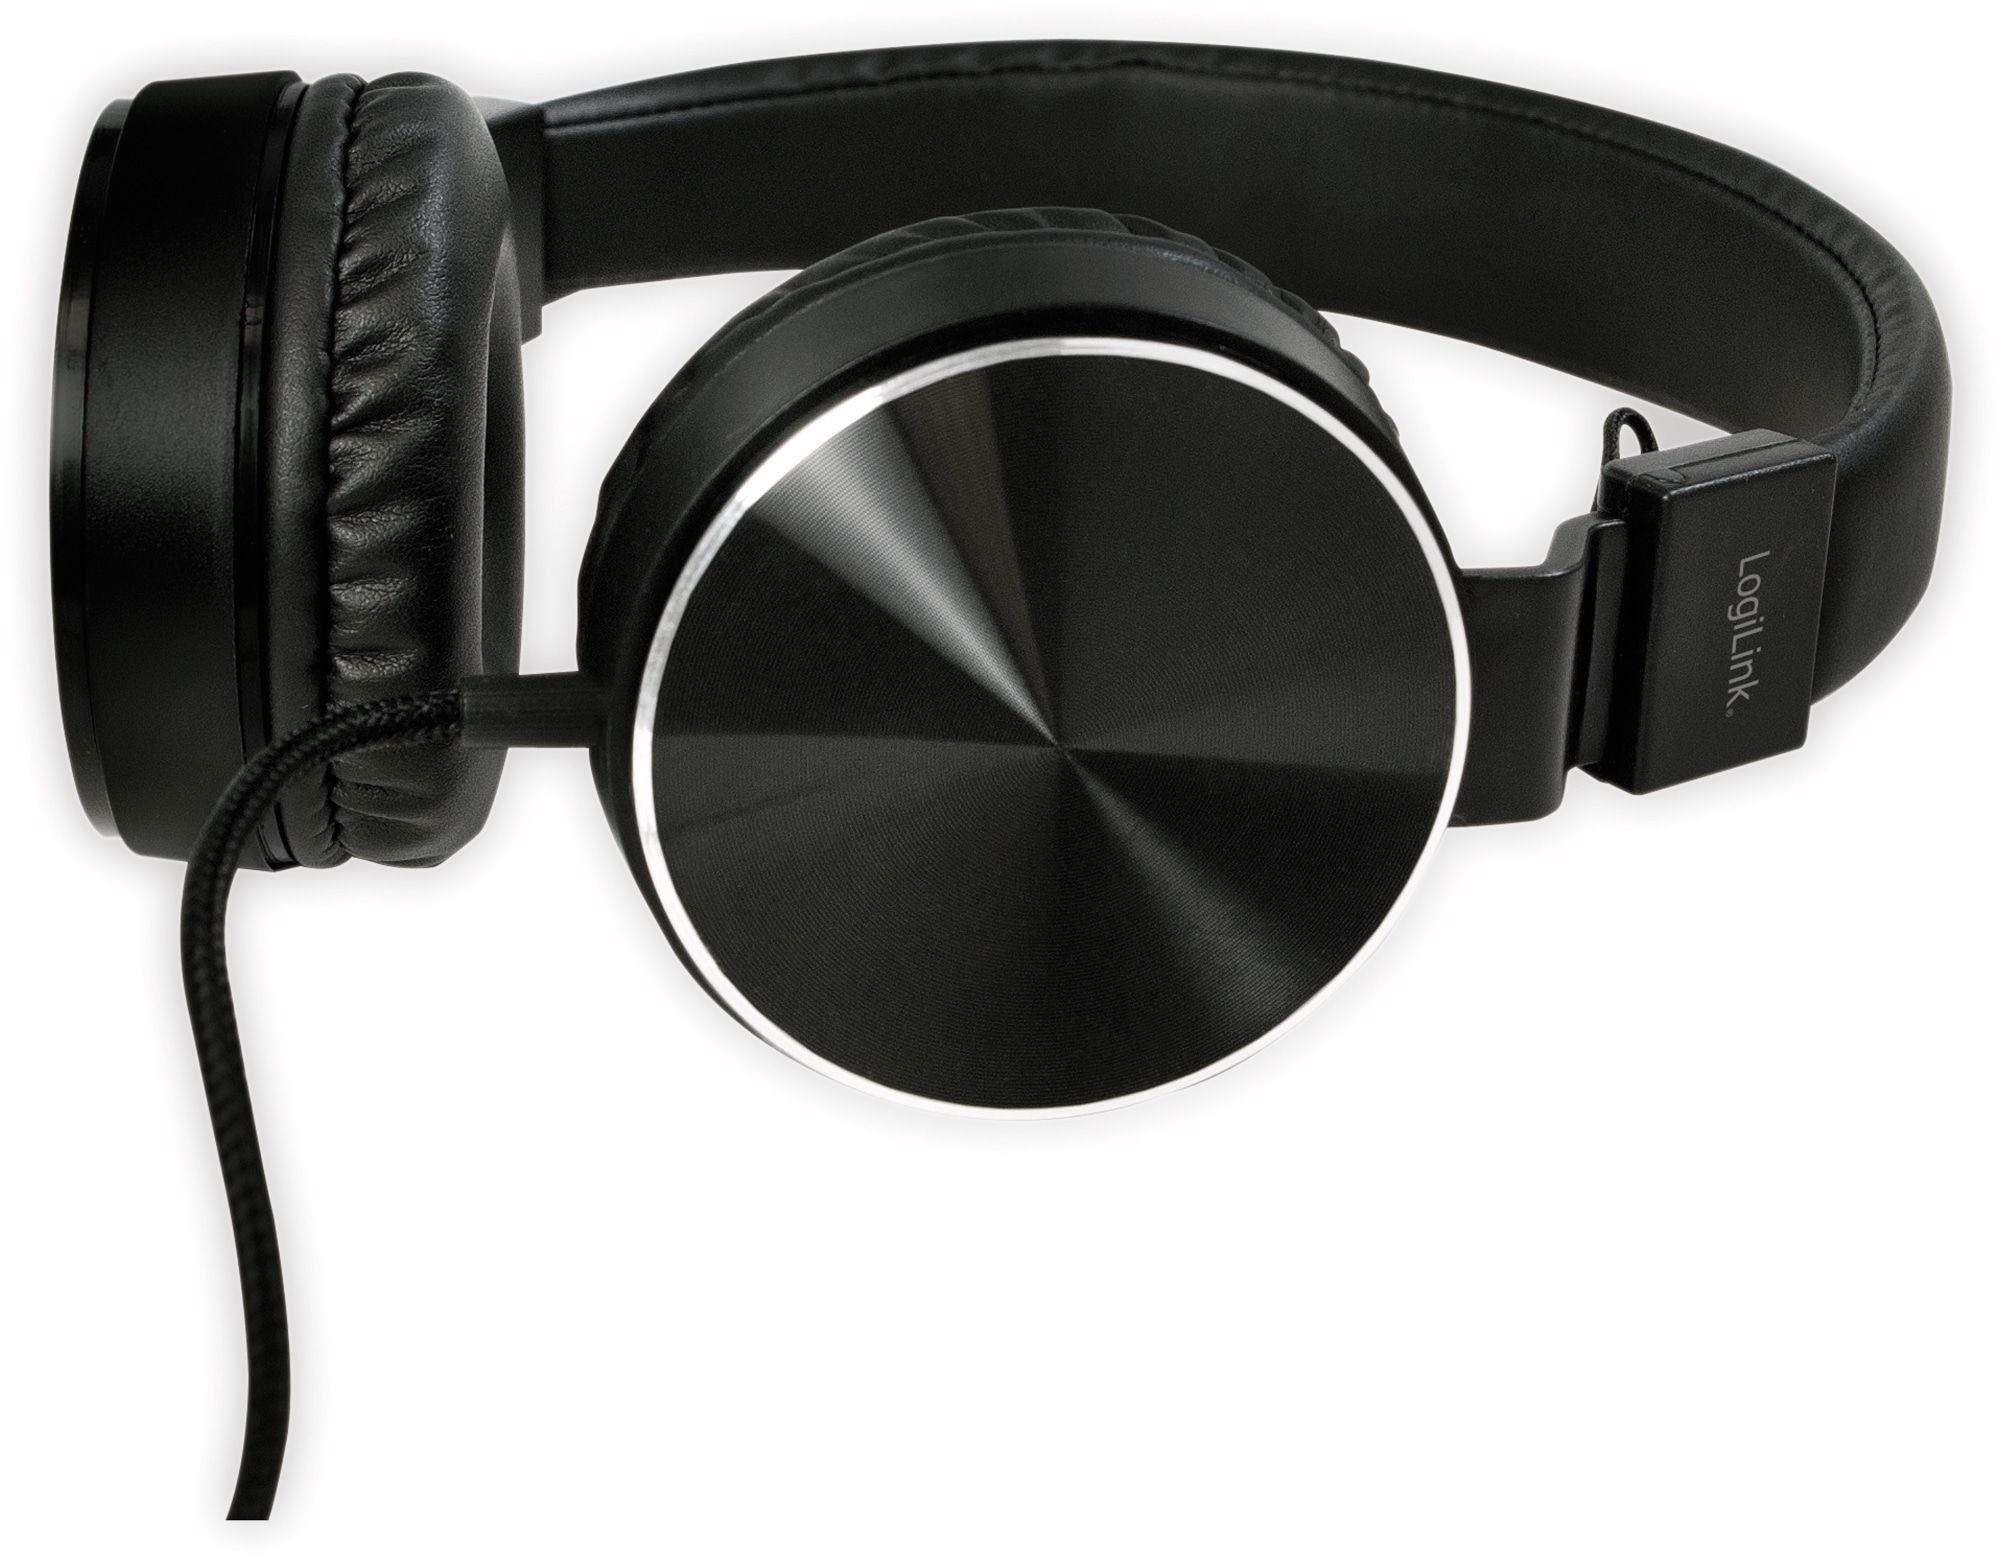 HS0049BK, LOGILINK LogiLink faltbar Kopfhörer Kopfhörer On-Ear